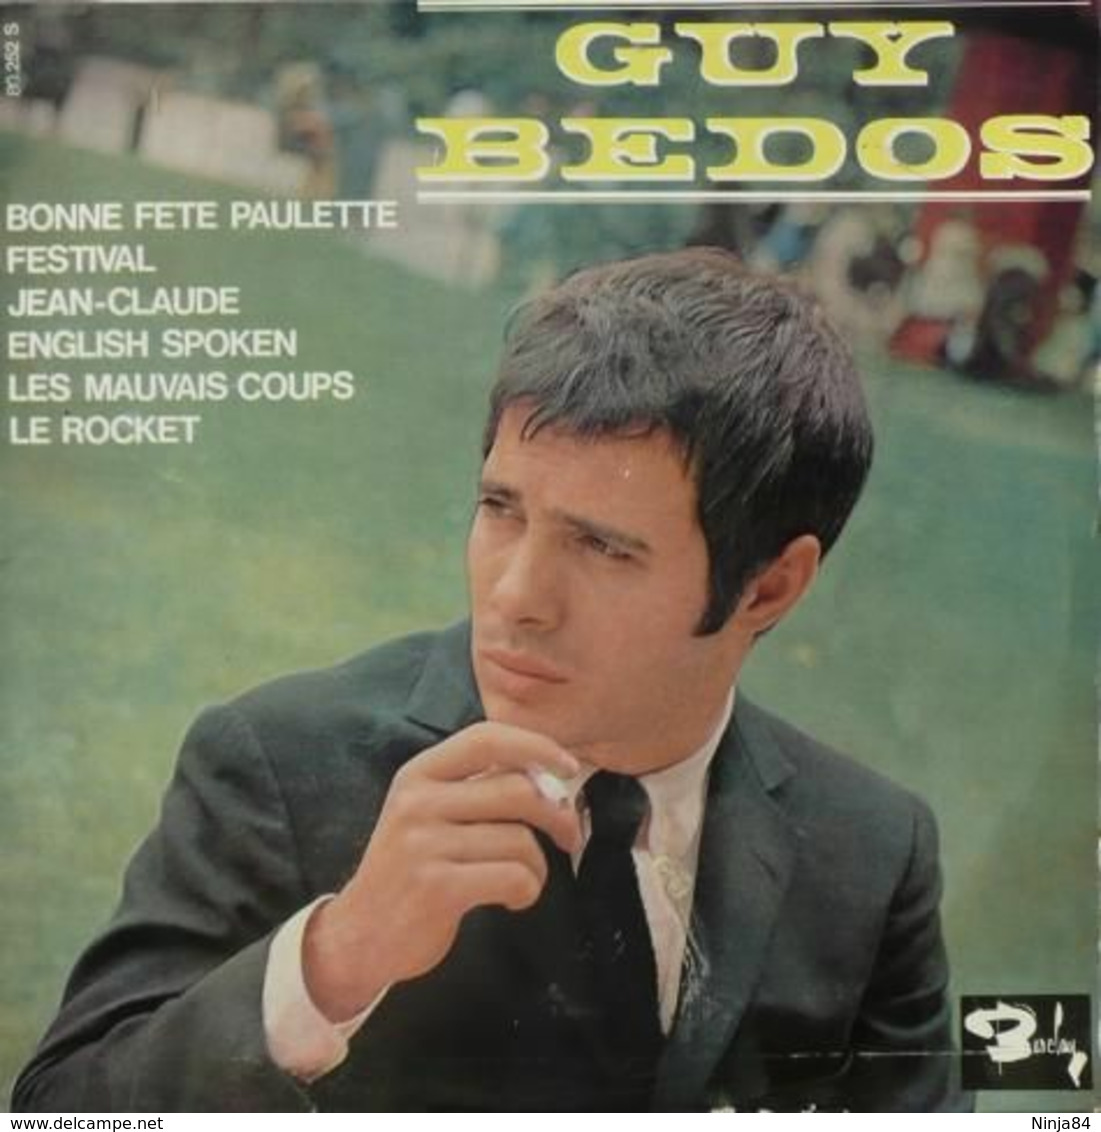 LP 25 CM (10")  Guy Bedos  "  Bonne Fête Paulette  " - Speciale Formaten